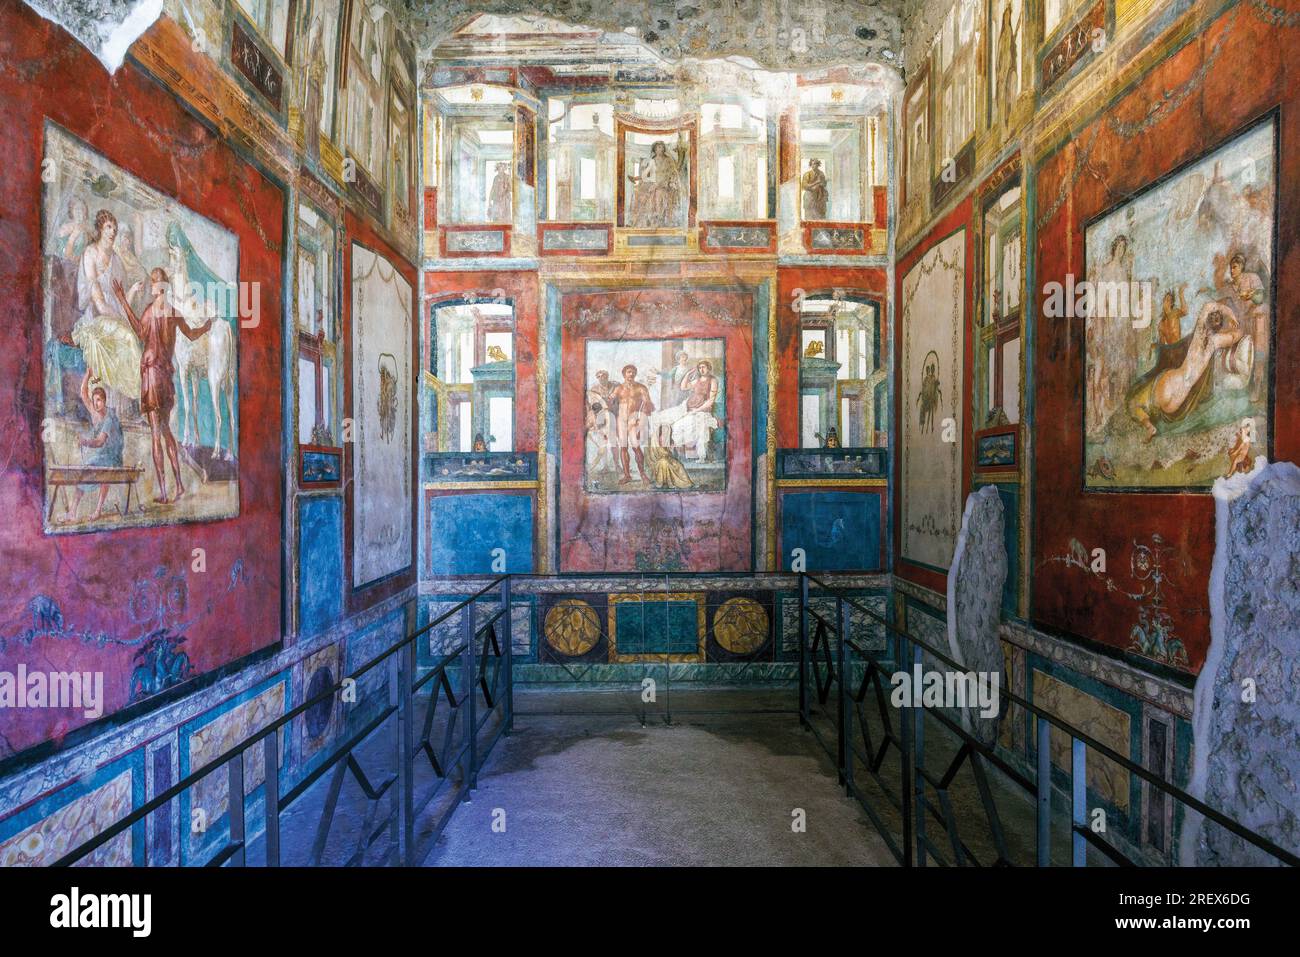 Sito archeologico di Pompei, Campania, Italia. Il triclinio, o sala da pranzo con i suoi affreschi di scene mitologiche greche. La camera è anche conosciuta Foto Stock